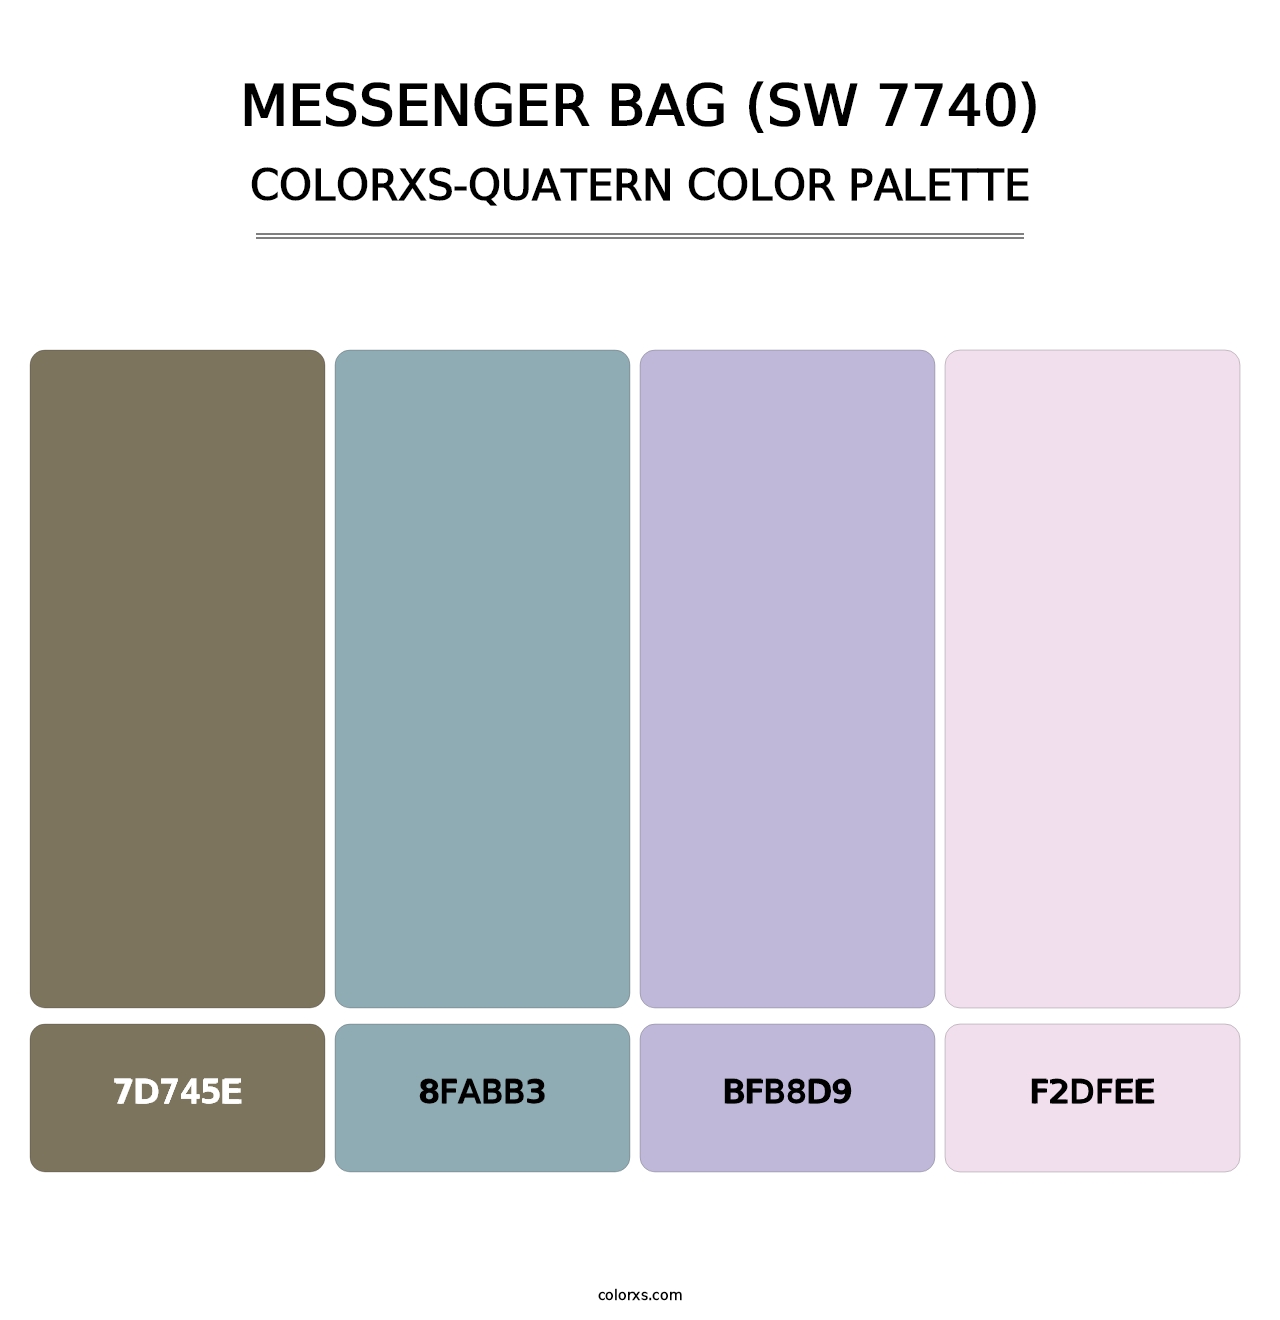 Messenger Bag (SW 7740) - Colorxs Quatern Palette